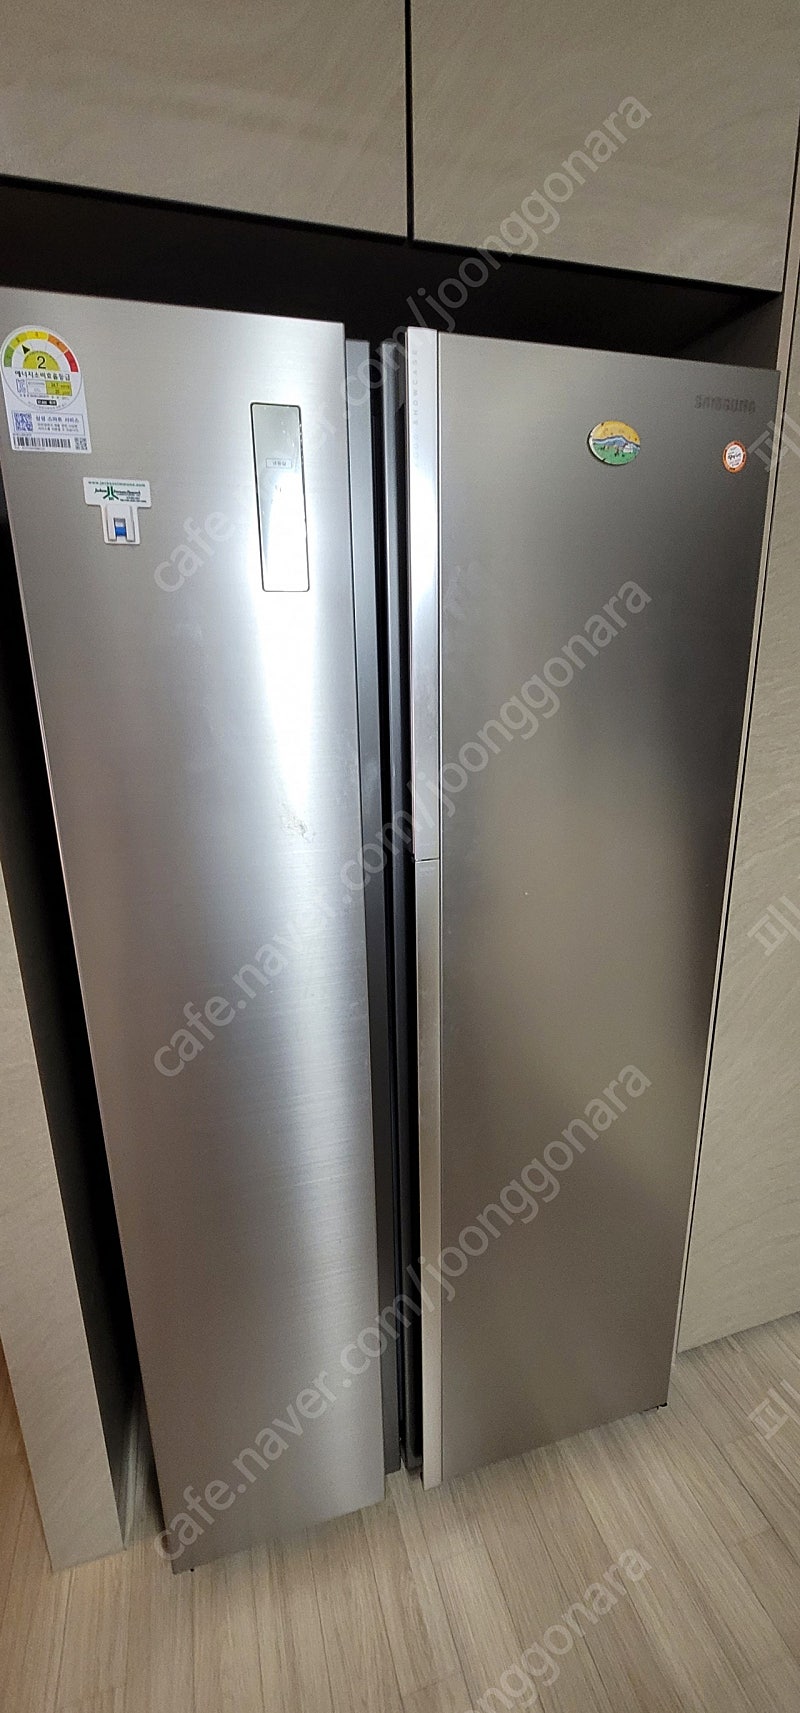 삼성 푸드쇼케이스 냉장고 831리터 양문형, 2016년식